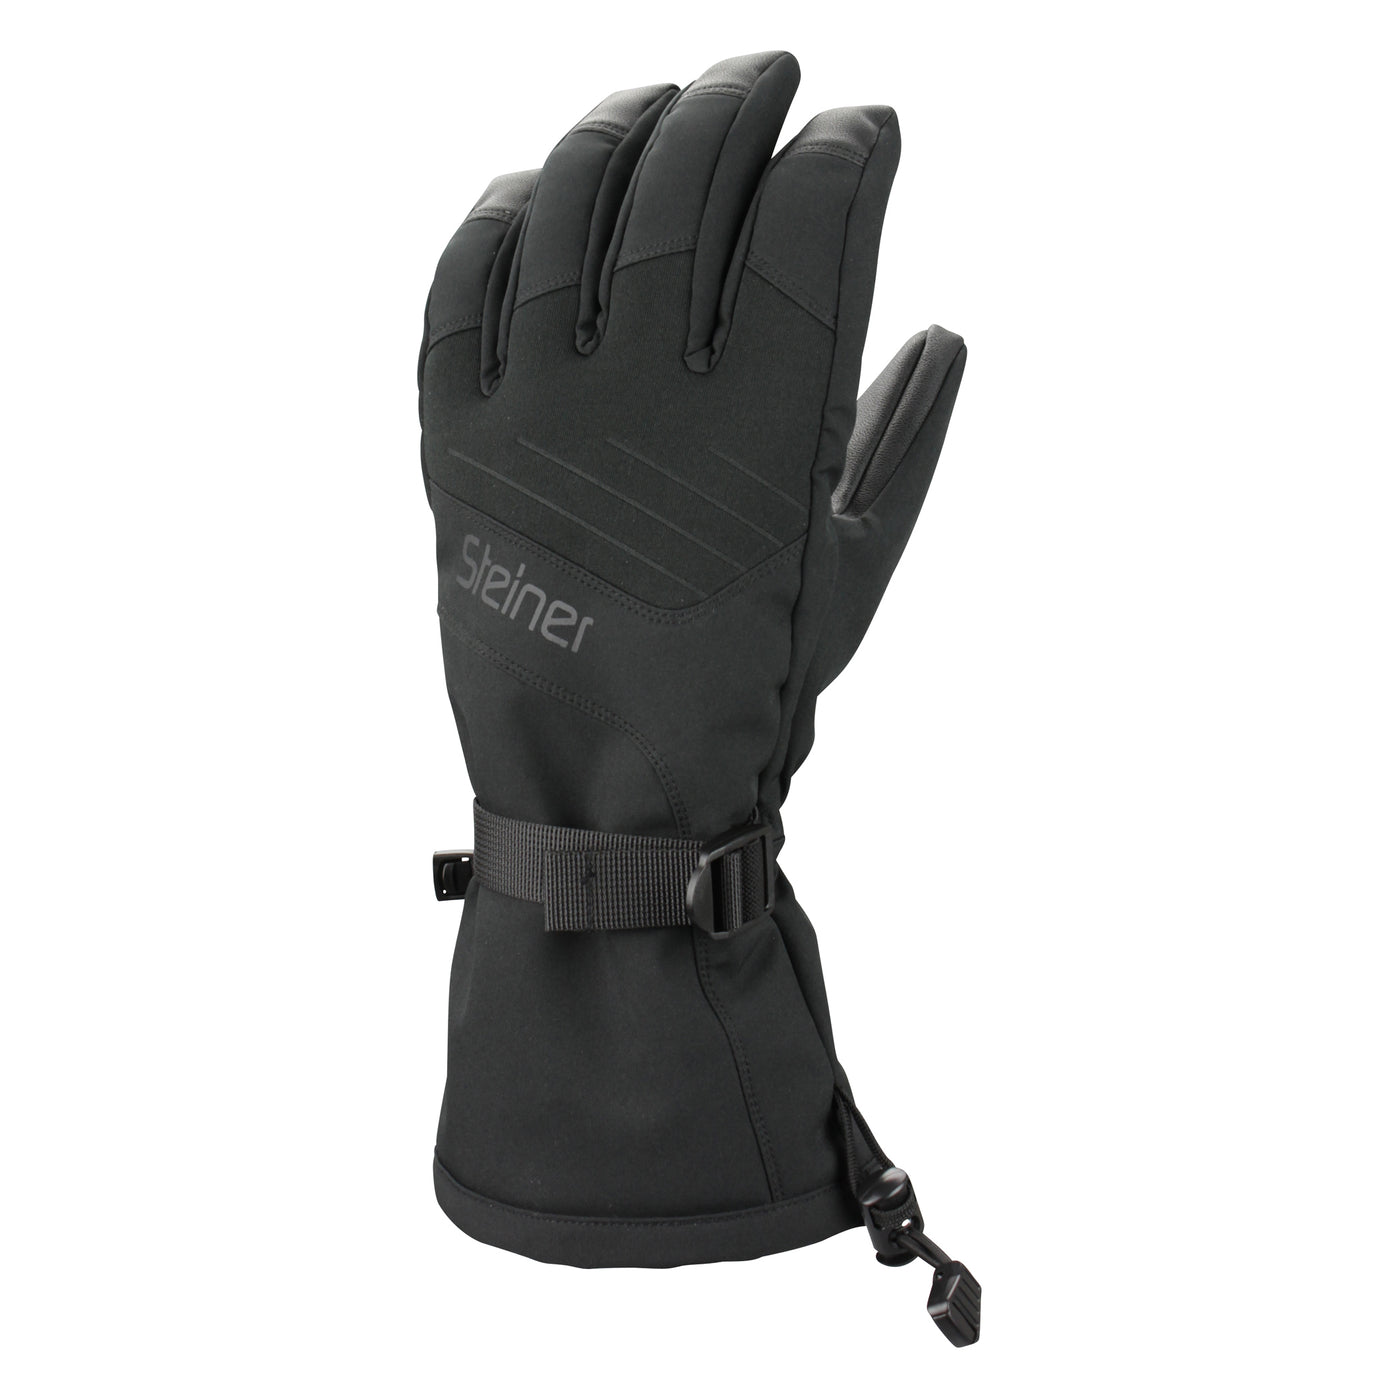 Steiner Mens Mountain Ski Glove Black